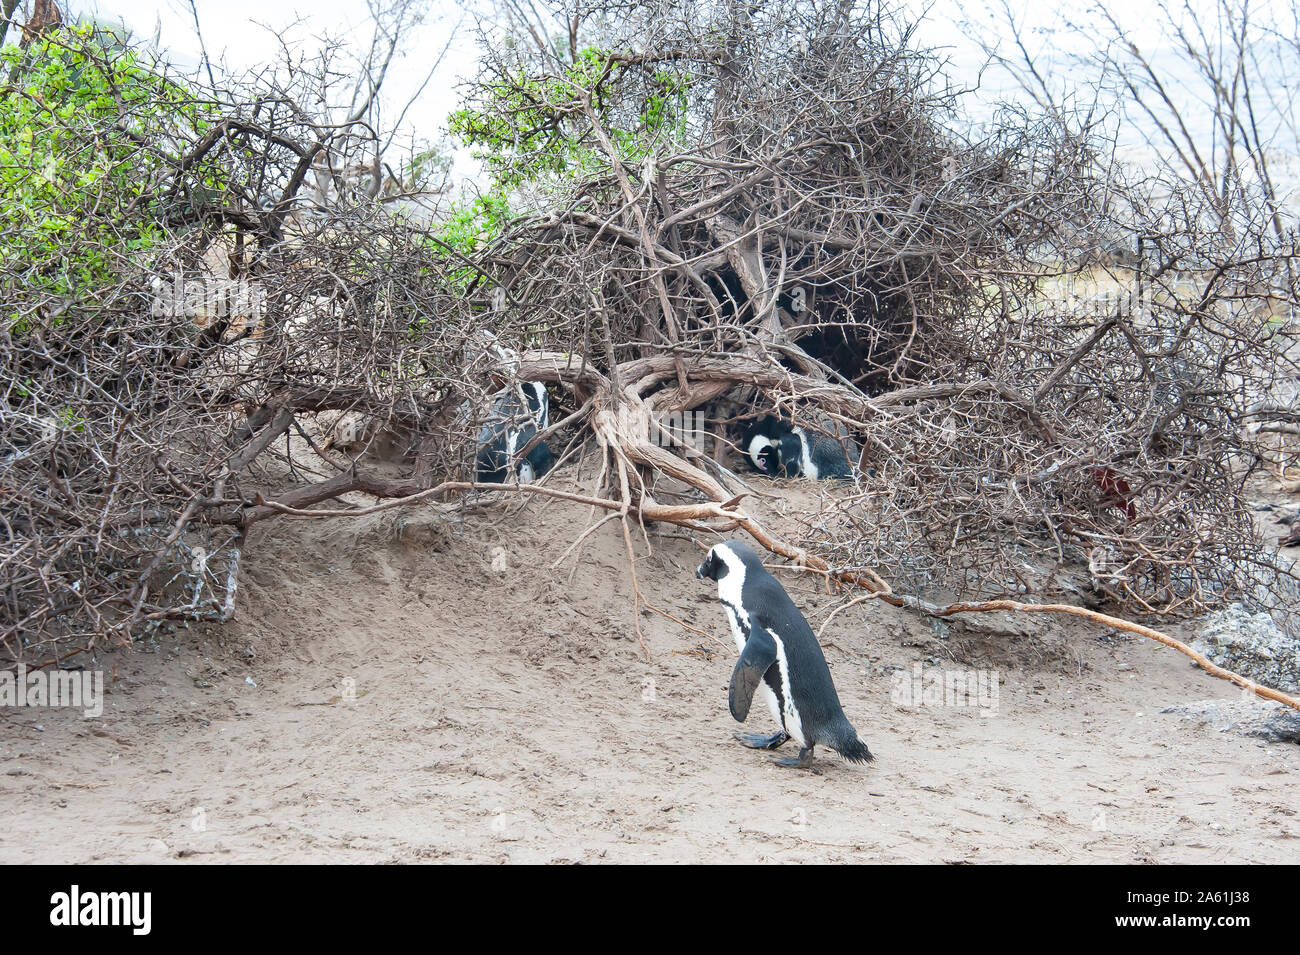 Der afrikanische Pinguin, die Cape Pinguin, und Südafrikanischen Pinguin, ist eine Pflanzenart aus der Gattung der Pinguin in südafrikanischen Gewässern, Kapstadt, Südafrika. Stockfoto